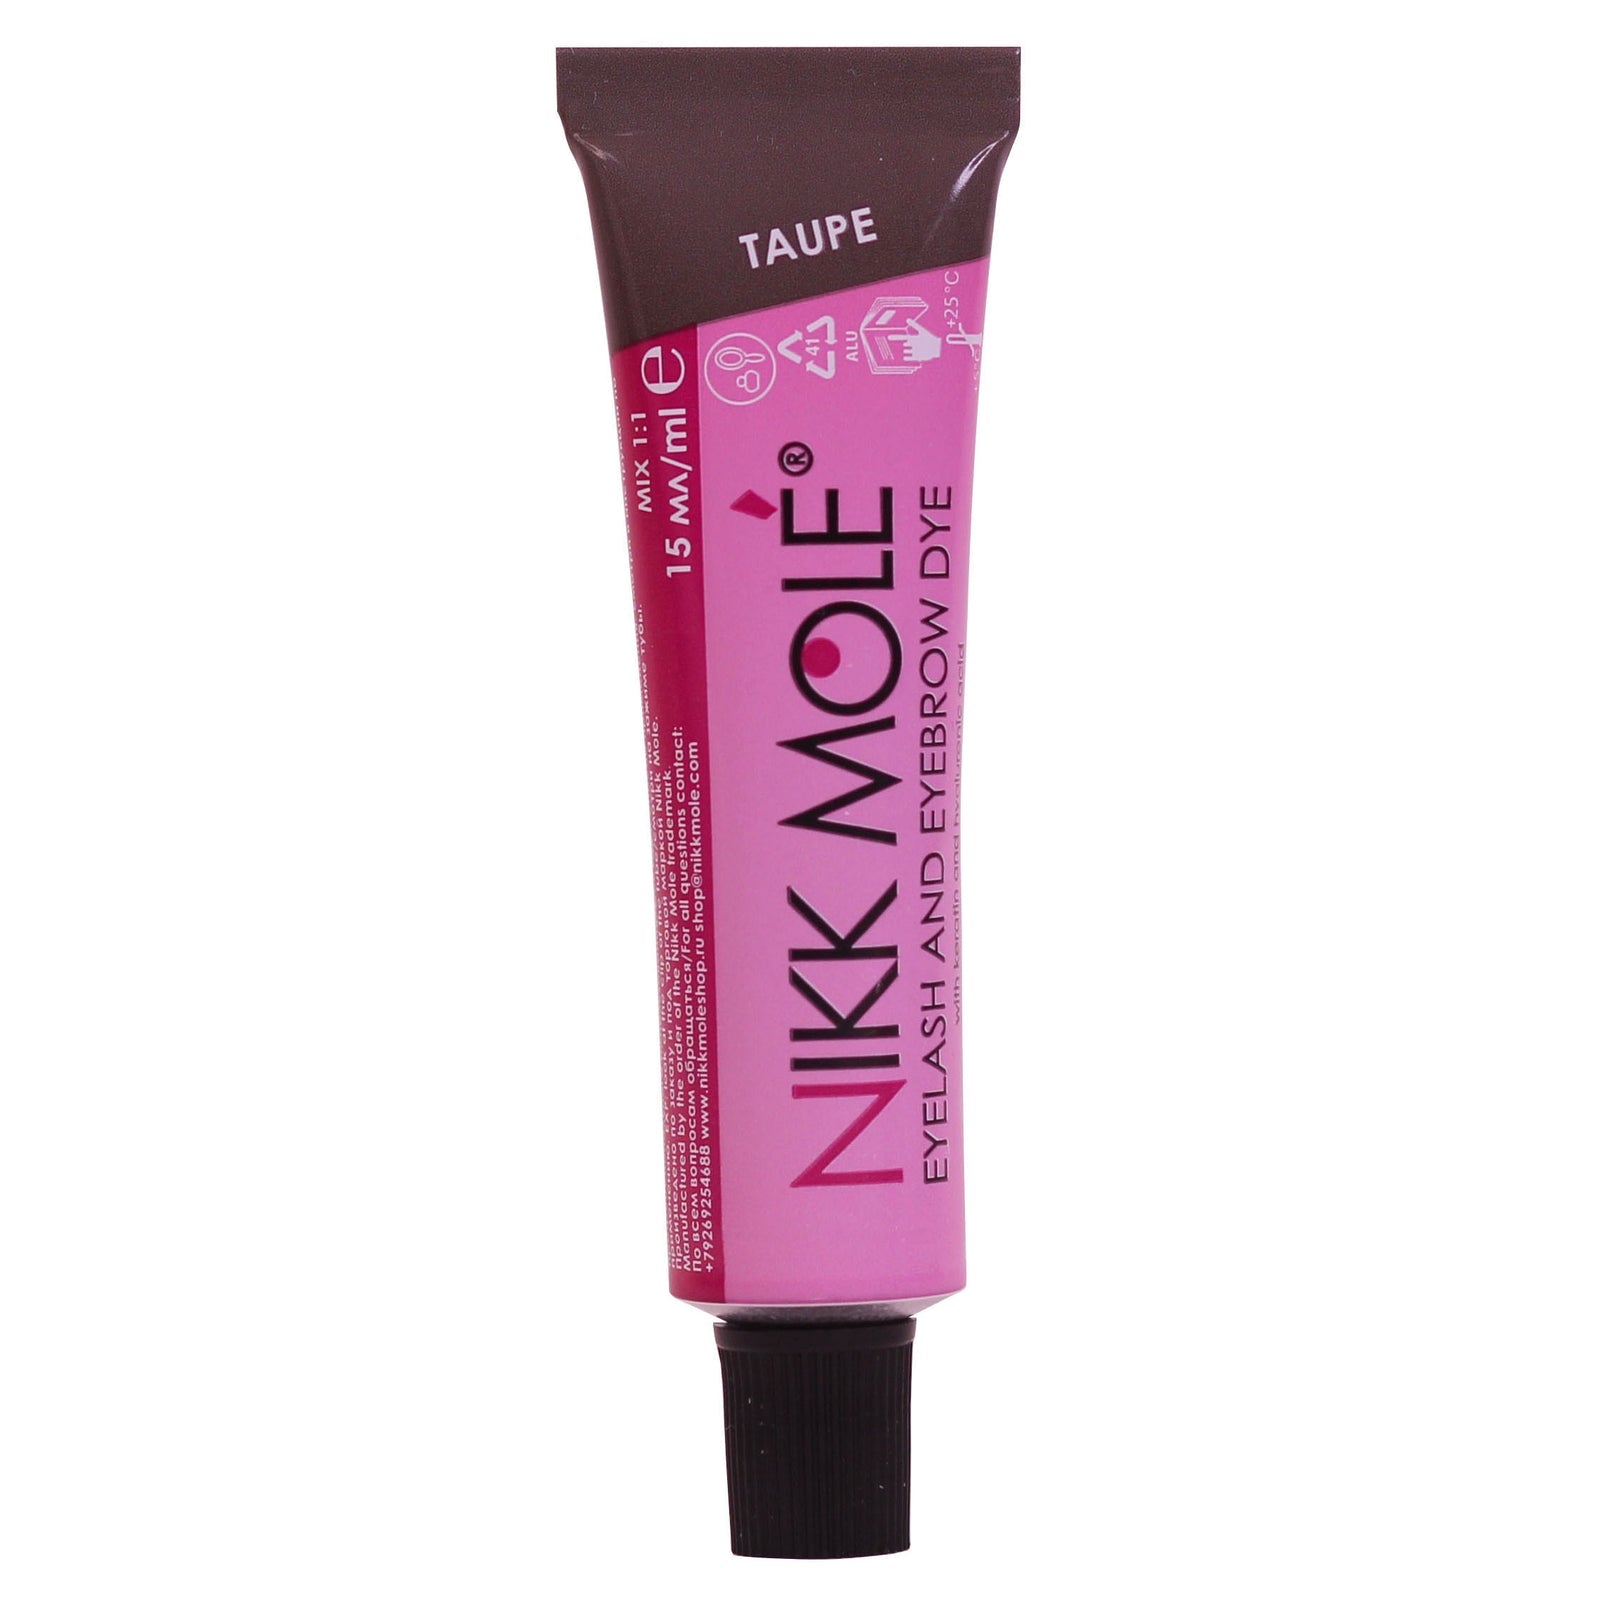 Nikk Mole - Eyebrow & Eyelash Dye